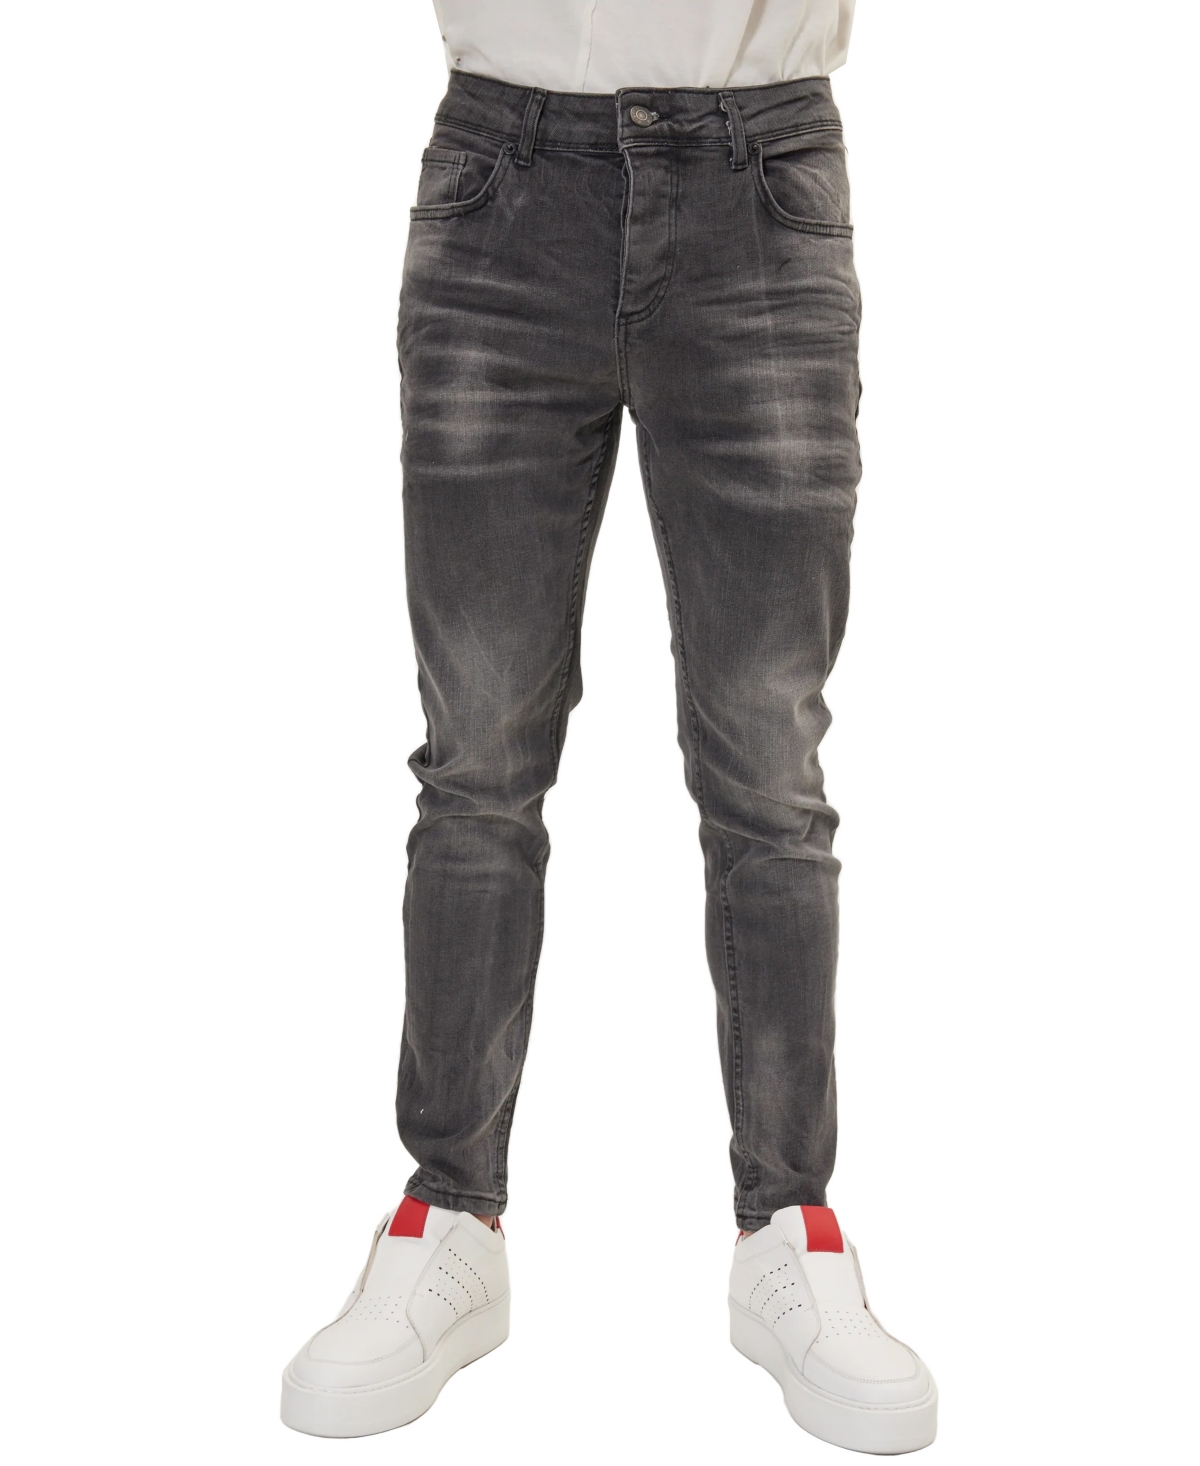 Men's Modern Whiskered Denim Jeans - Gray